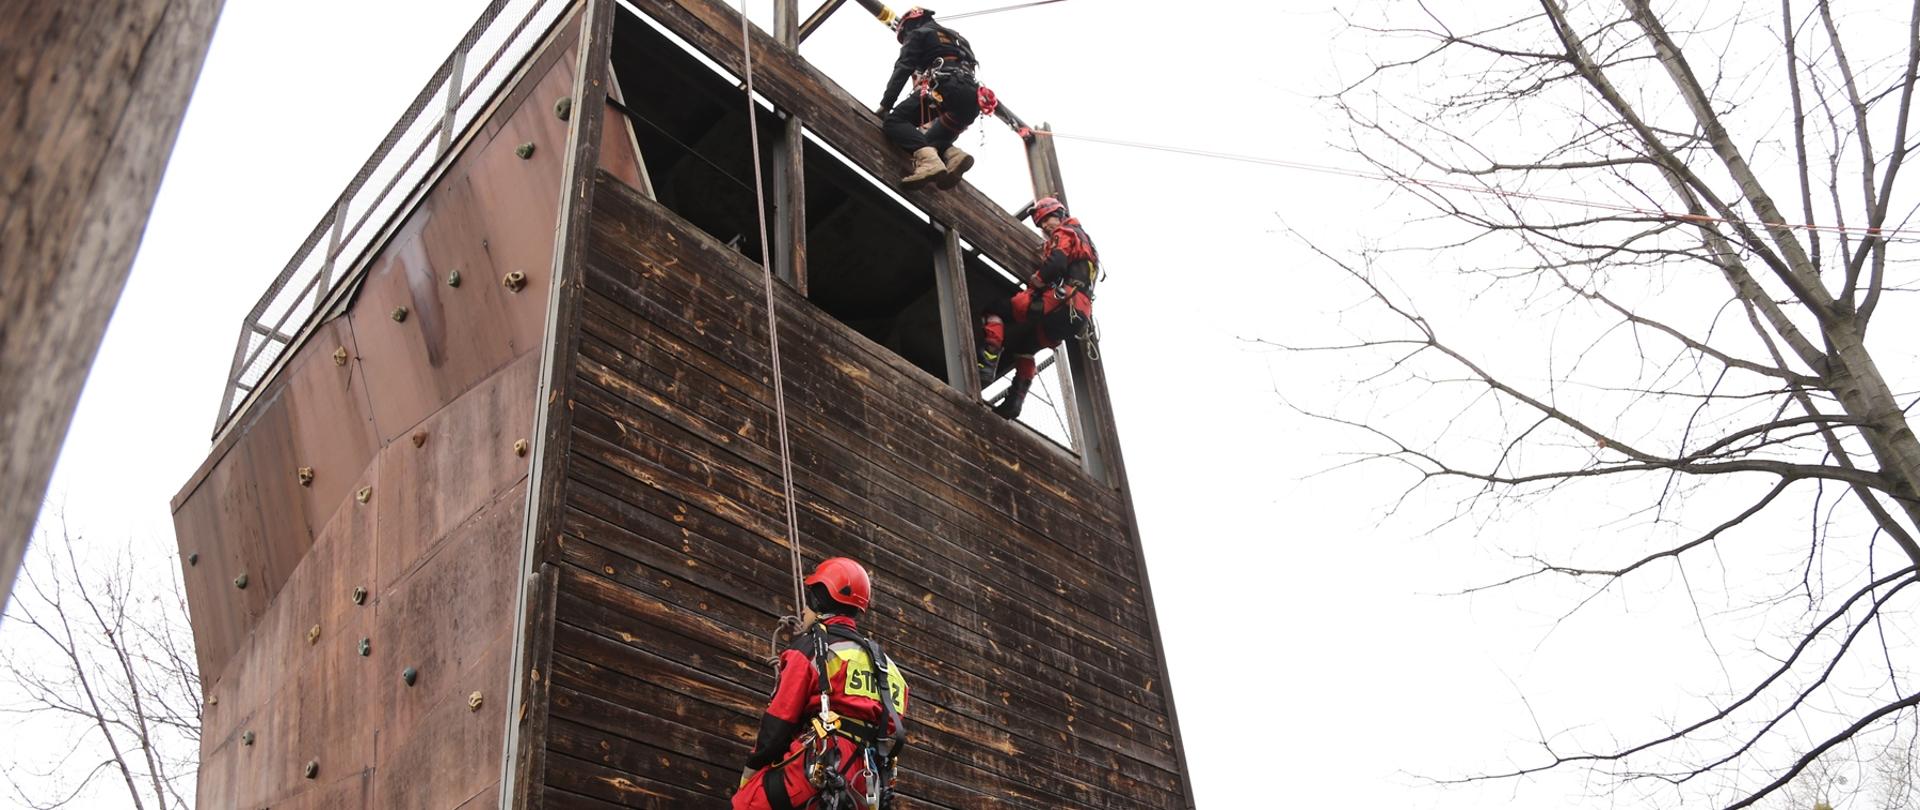 Troje ratowników wysokościowych zjeżdża na linach po ściance konstrukcji treningowej